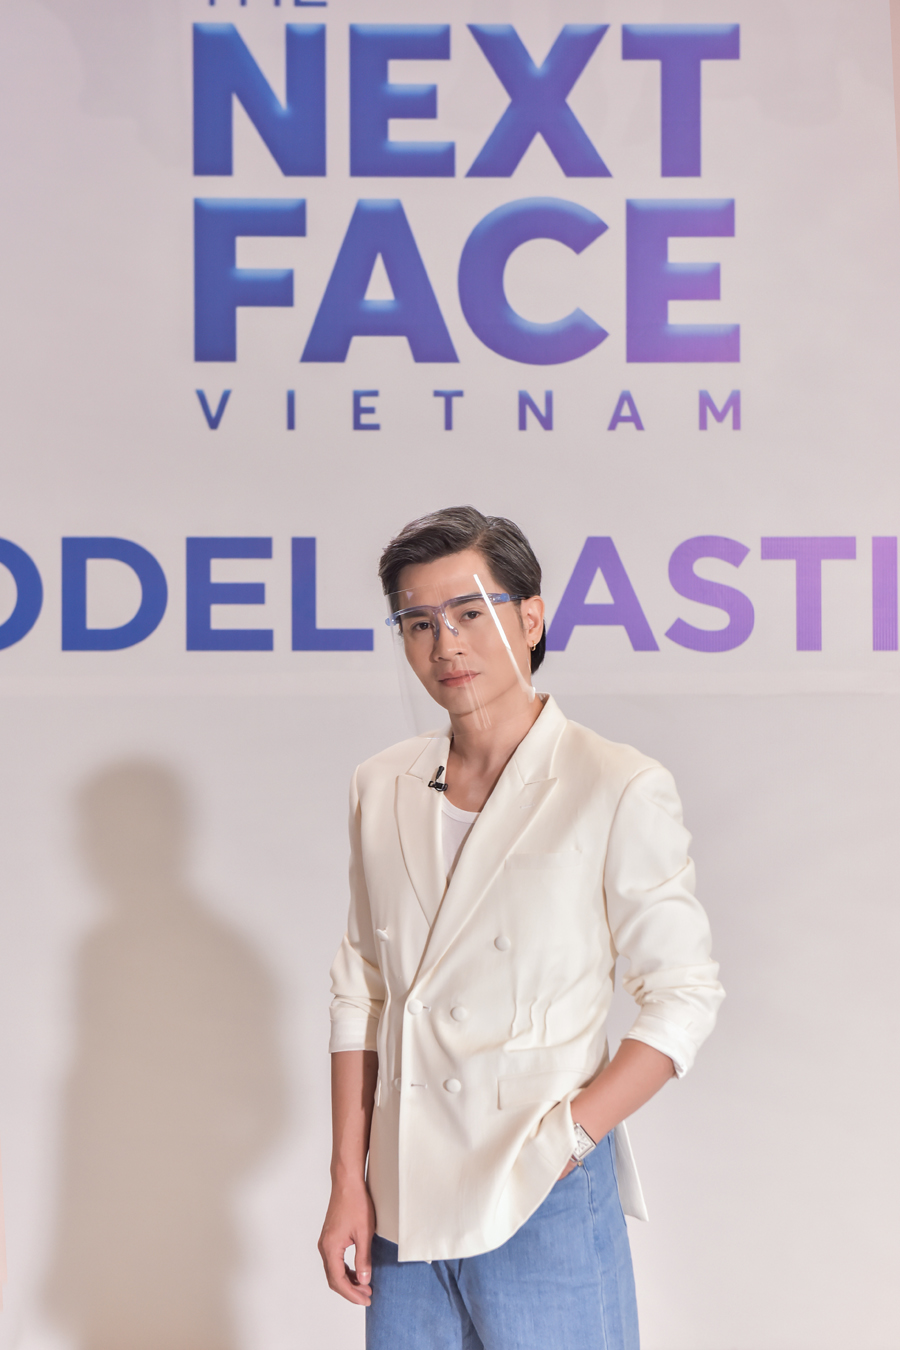 Hoa hậu H’Hen Niê, Á hậu Mâu Thủy đọ sắc trên ghế nóng tại vòng sơ tuyển của The Next Face Vietnam 2021 - ảnh 7